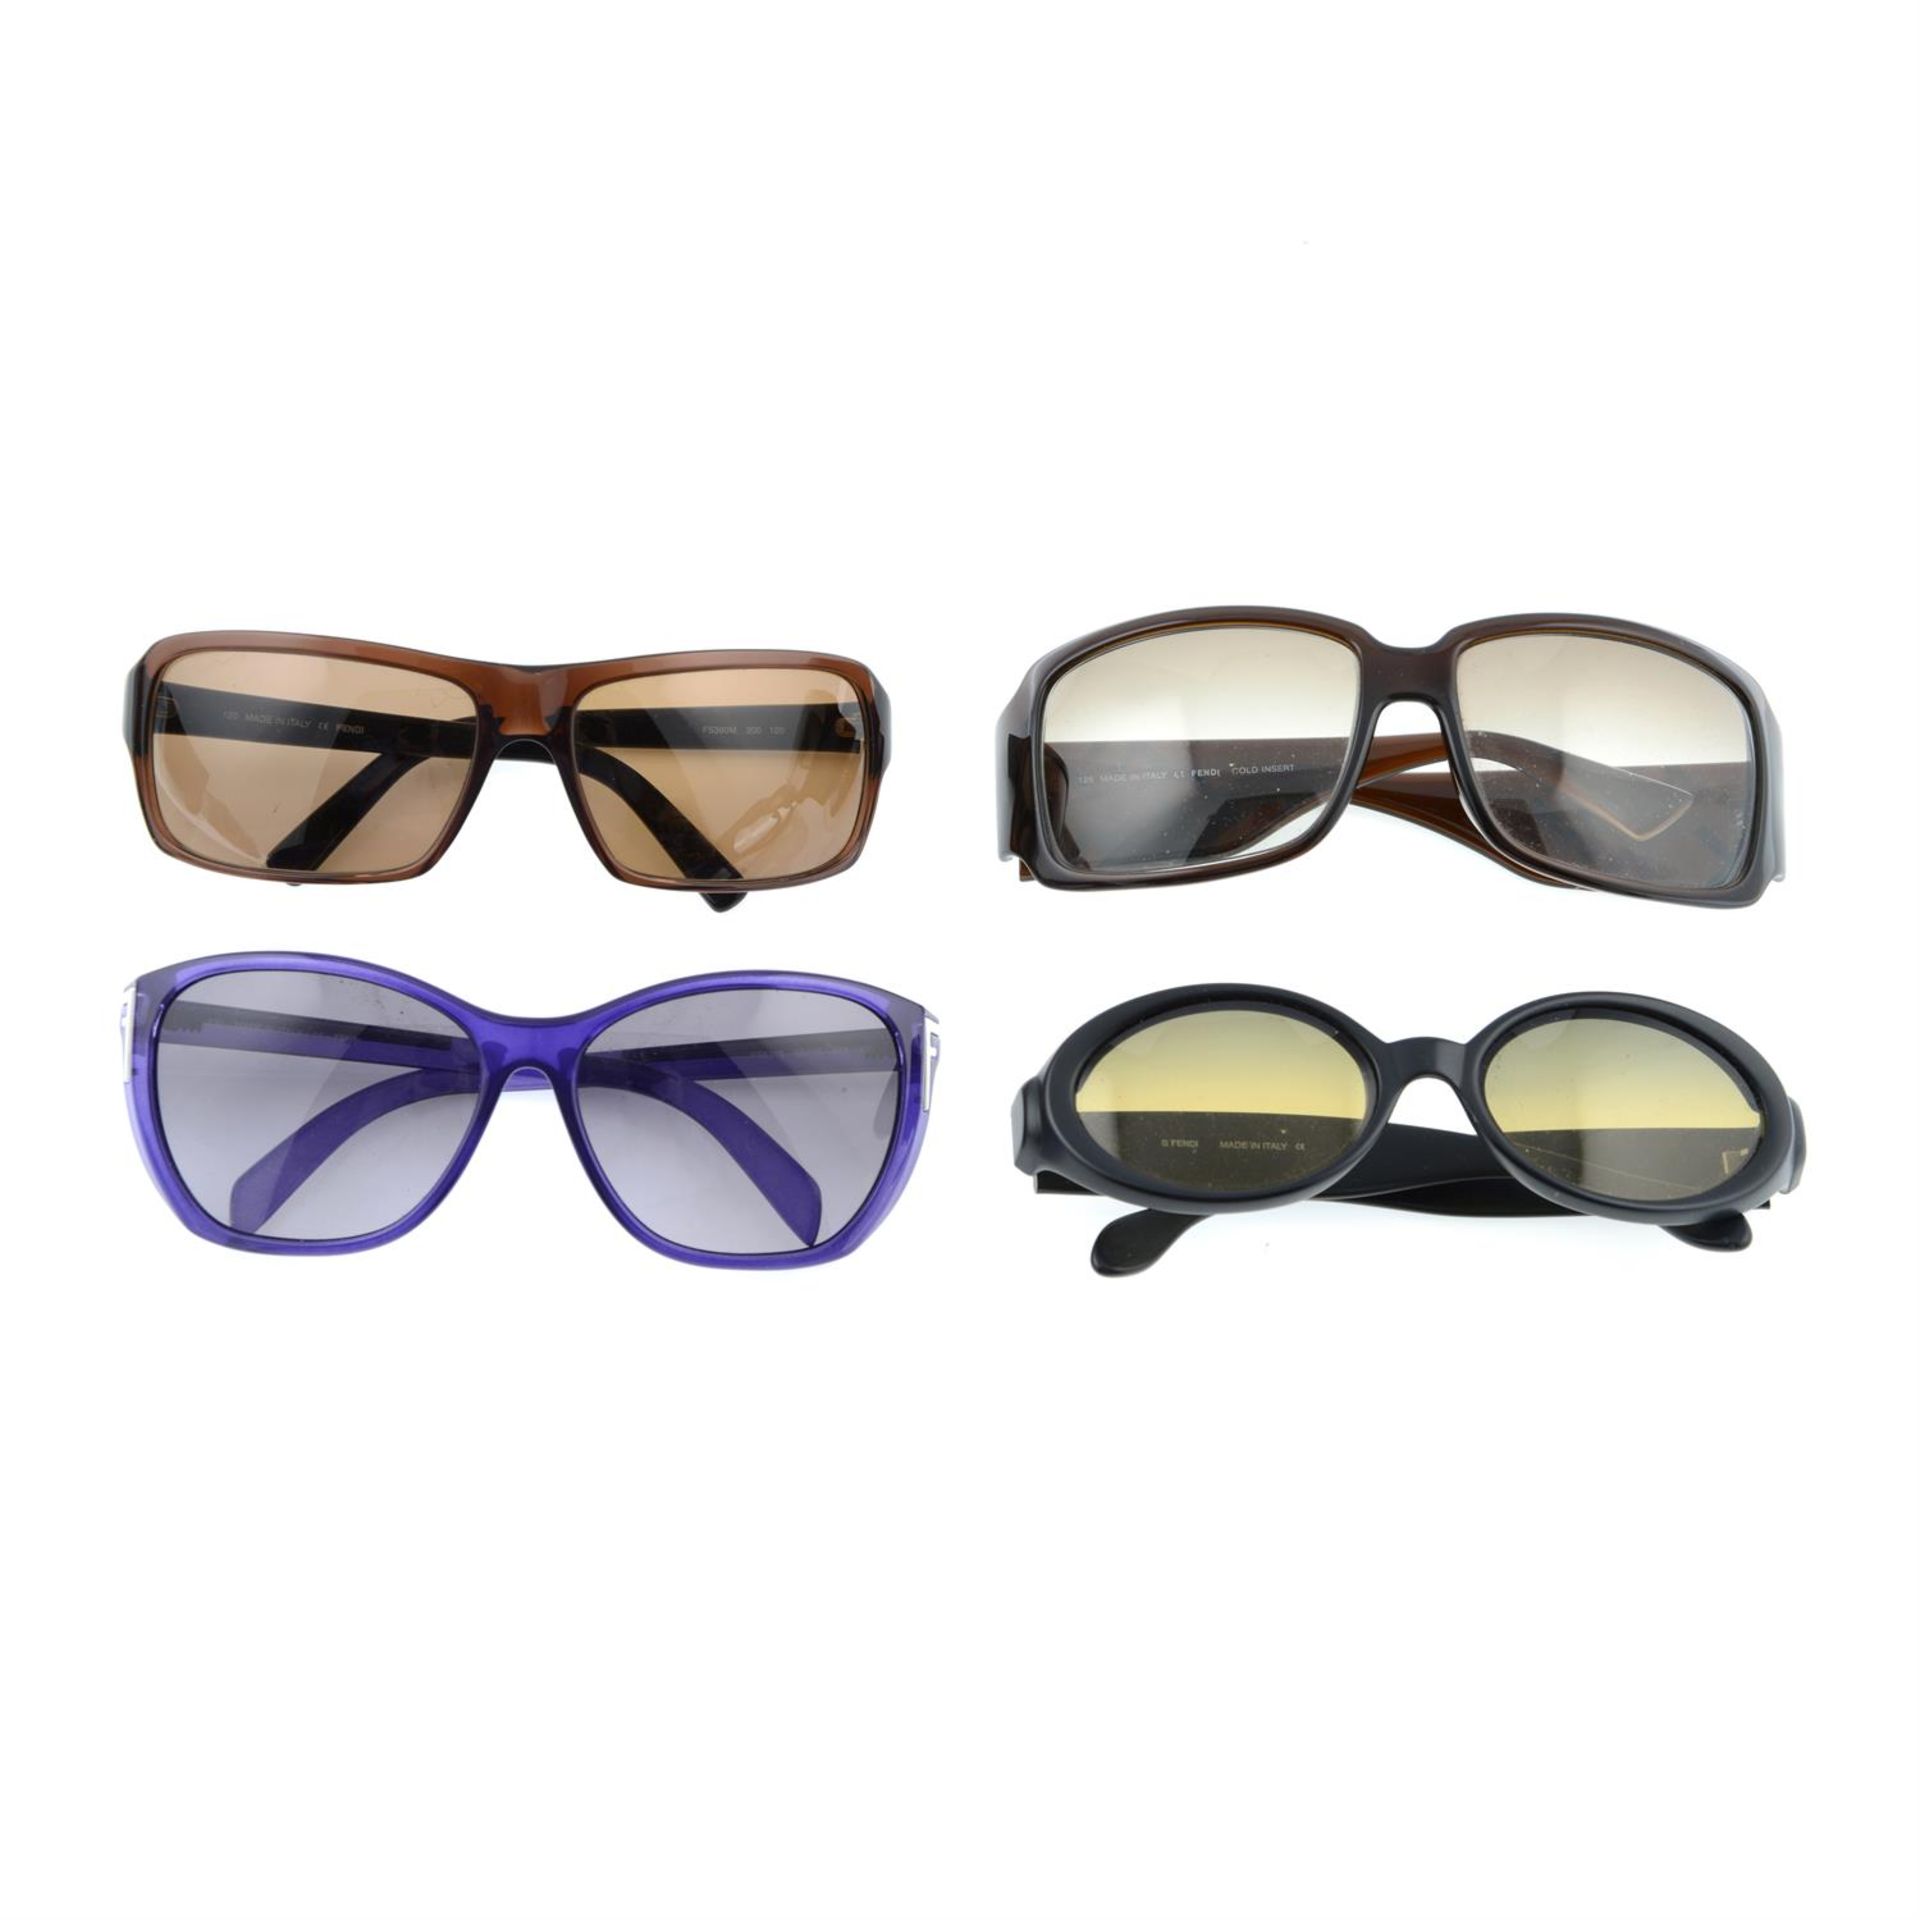 FENDI - four pairs of sunglasses.